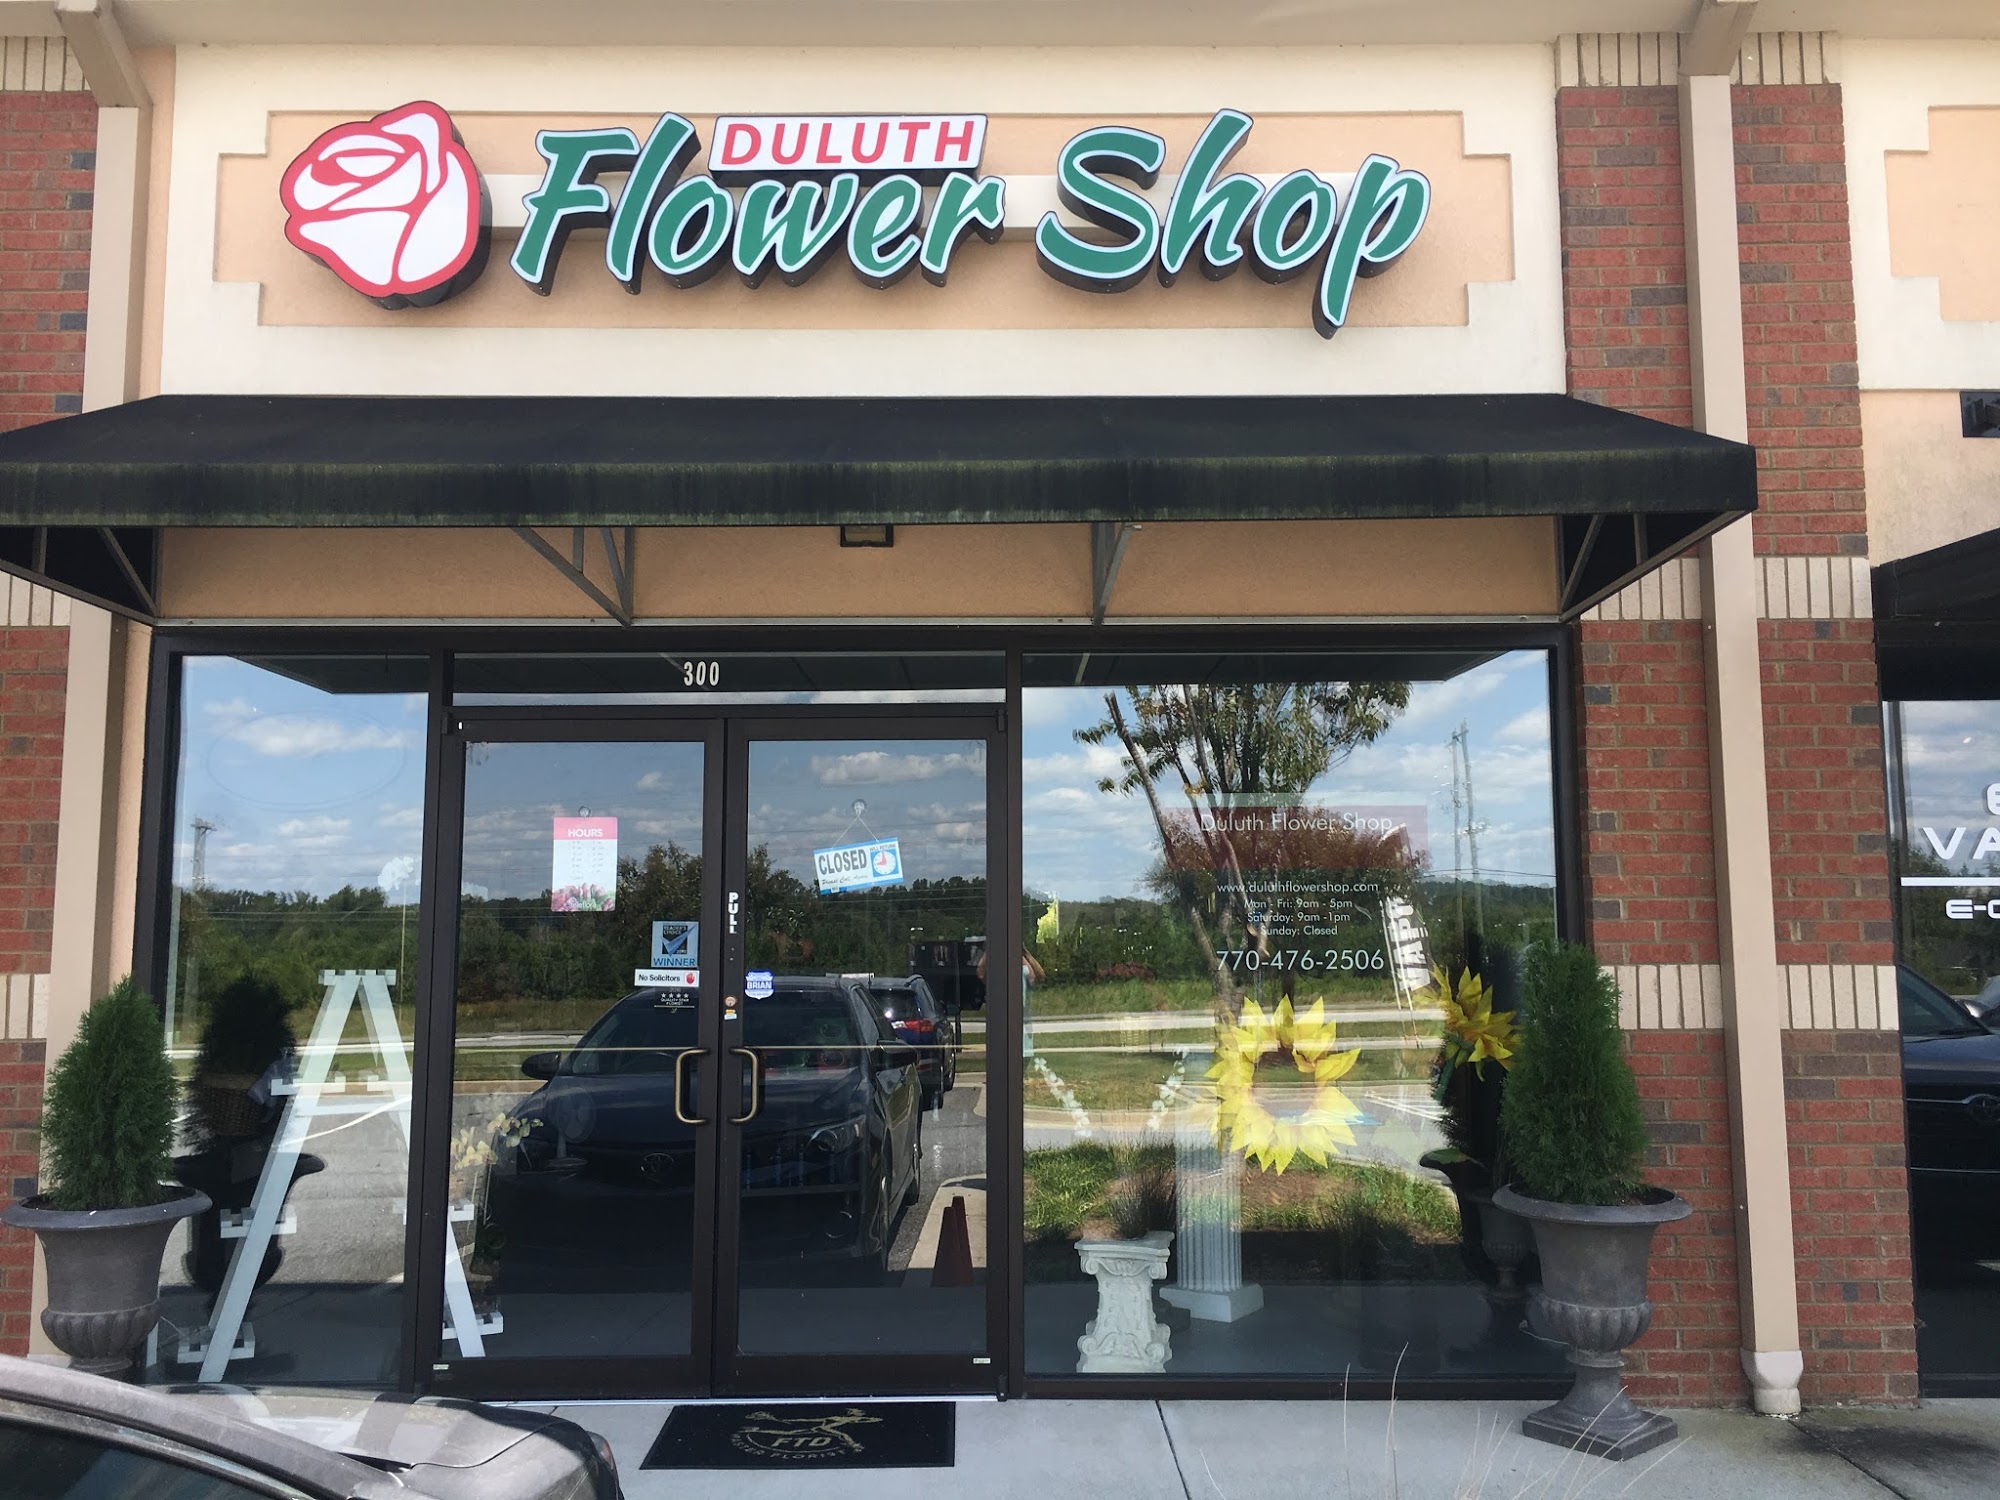 Duluth Flower Shop